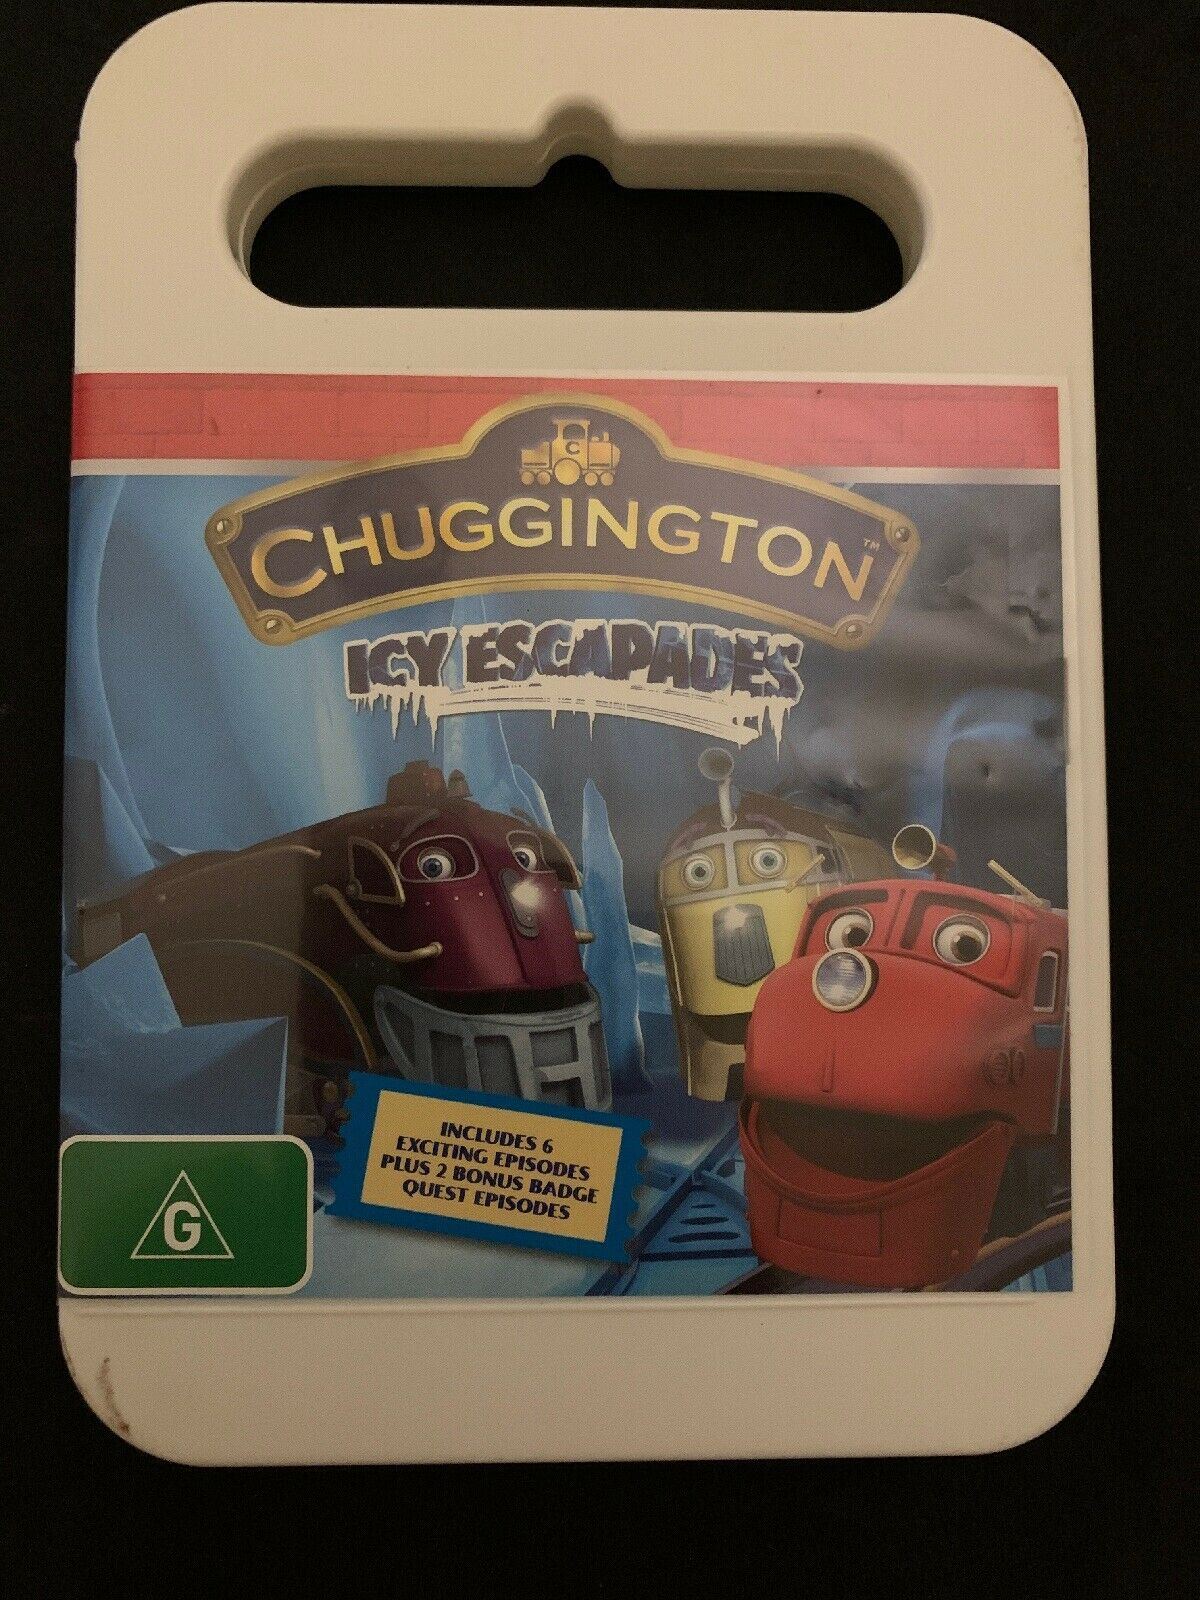 Chuggington - Icy Escapades (DVD, 2012)